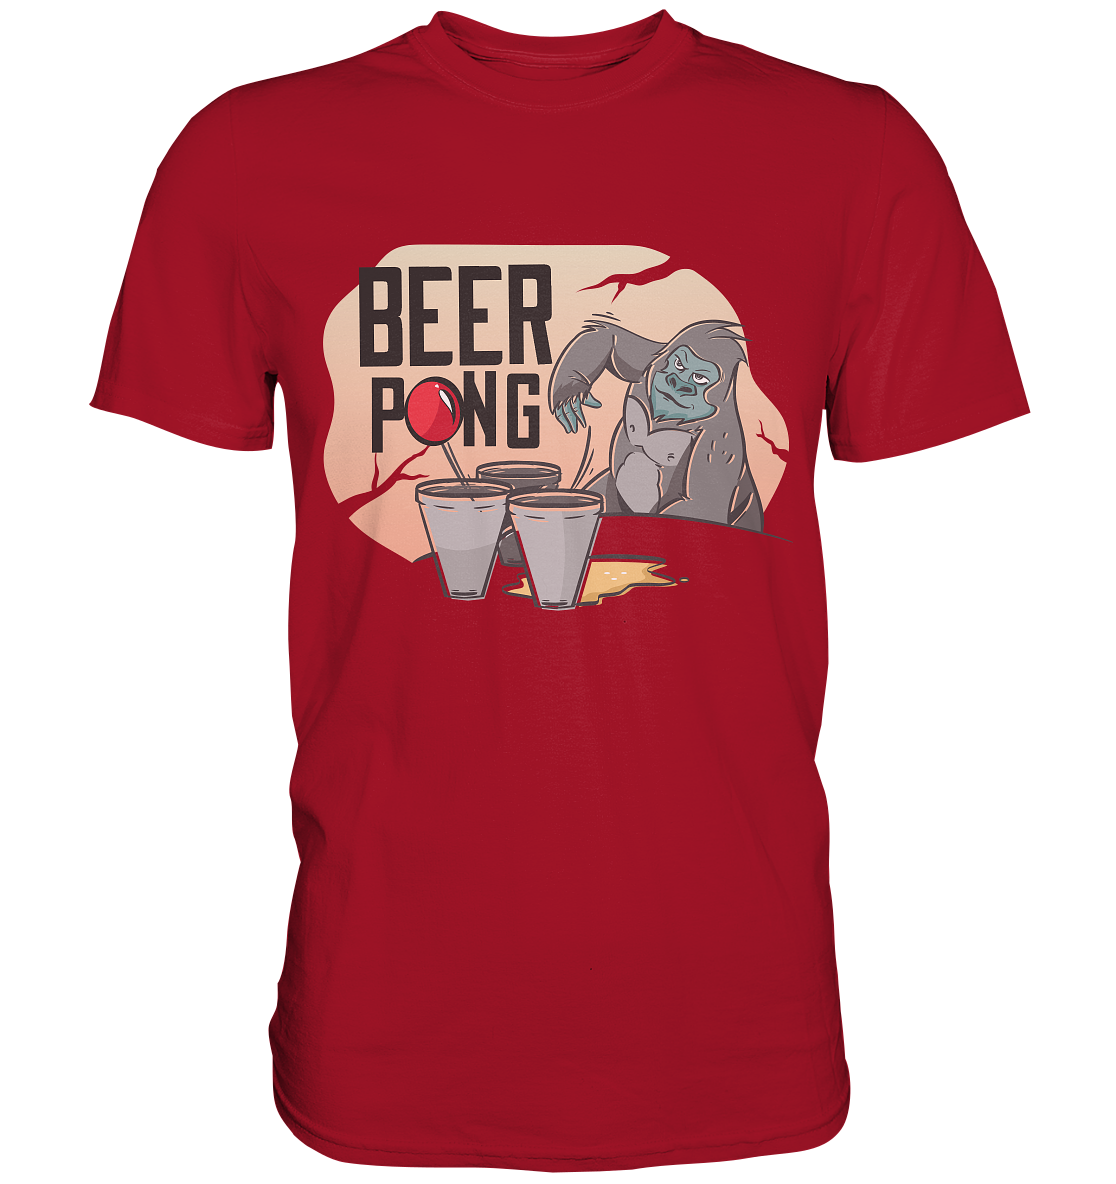 Bier - Beer Pong Gorilla  - Classic Shirt